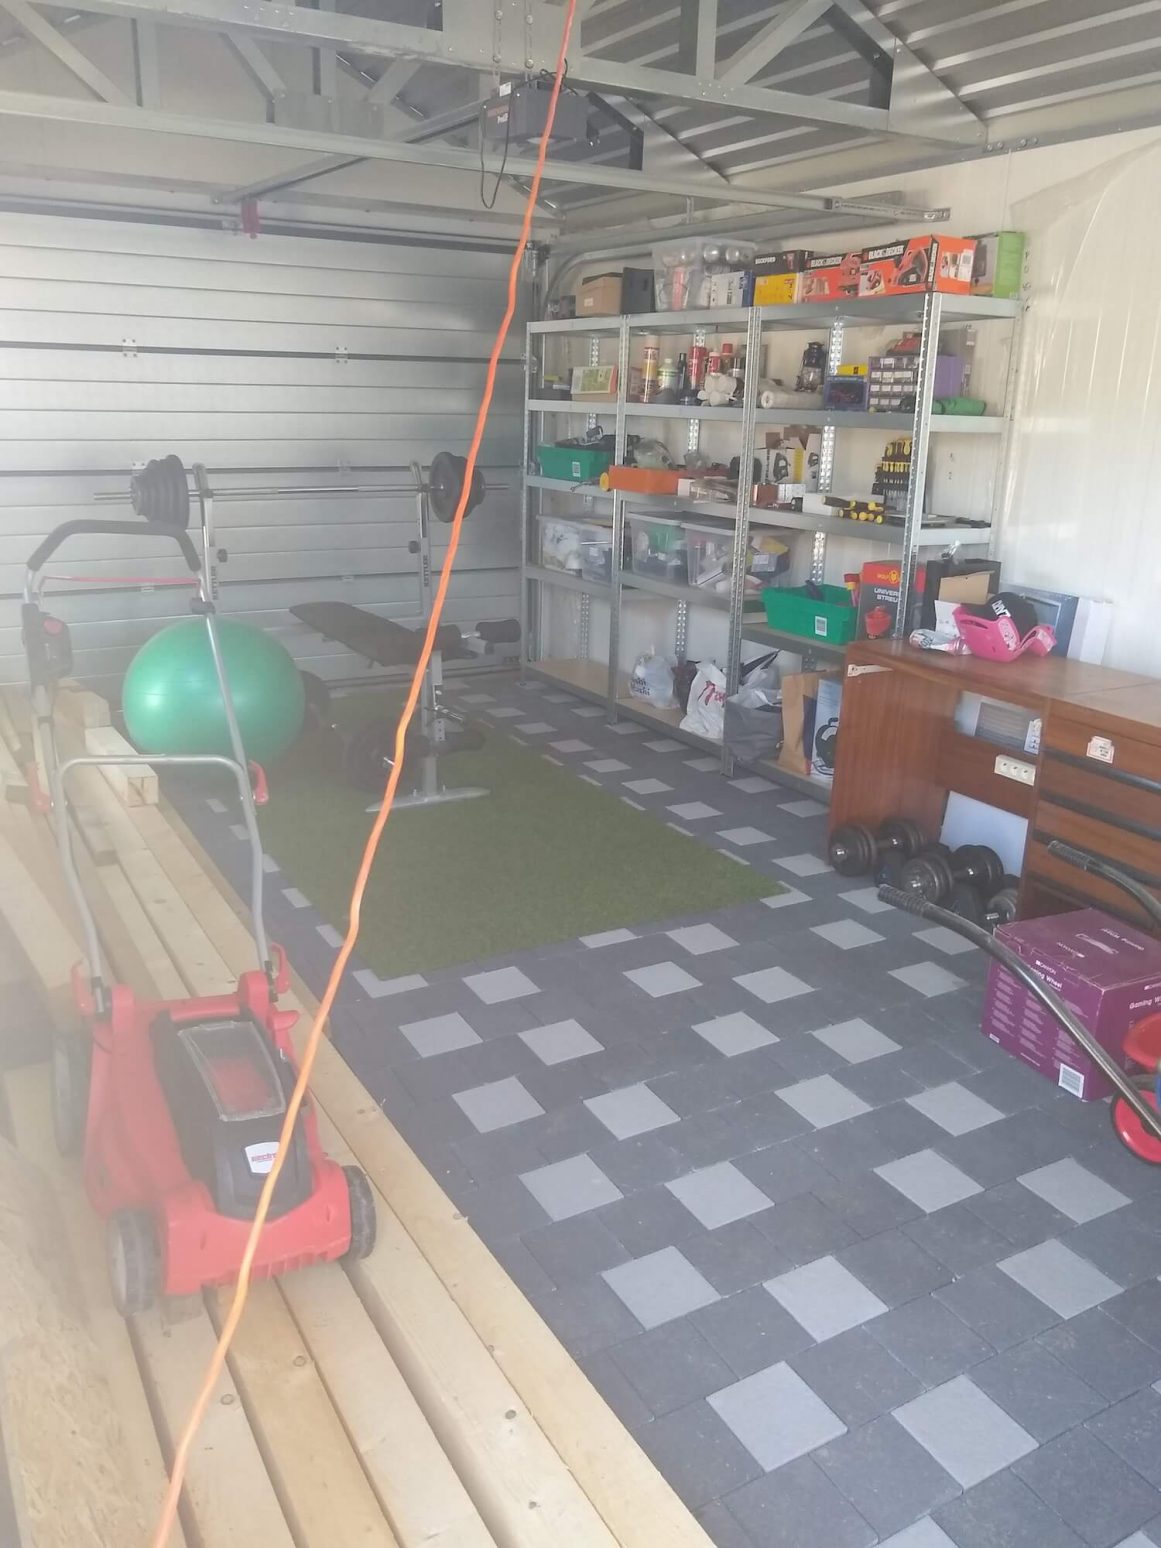 Kosačka, náčinie a cvičebné pomôcky vo vnútri garáže